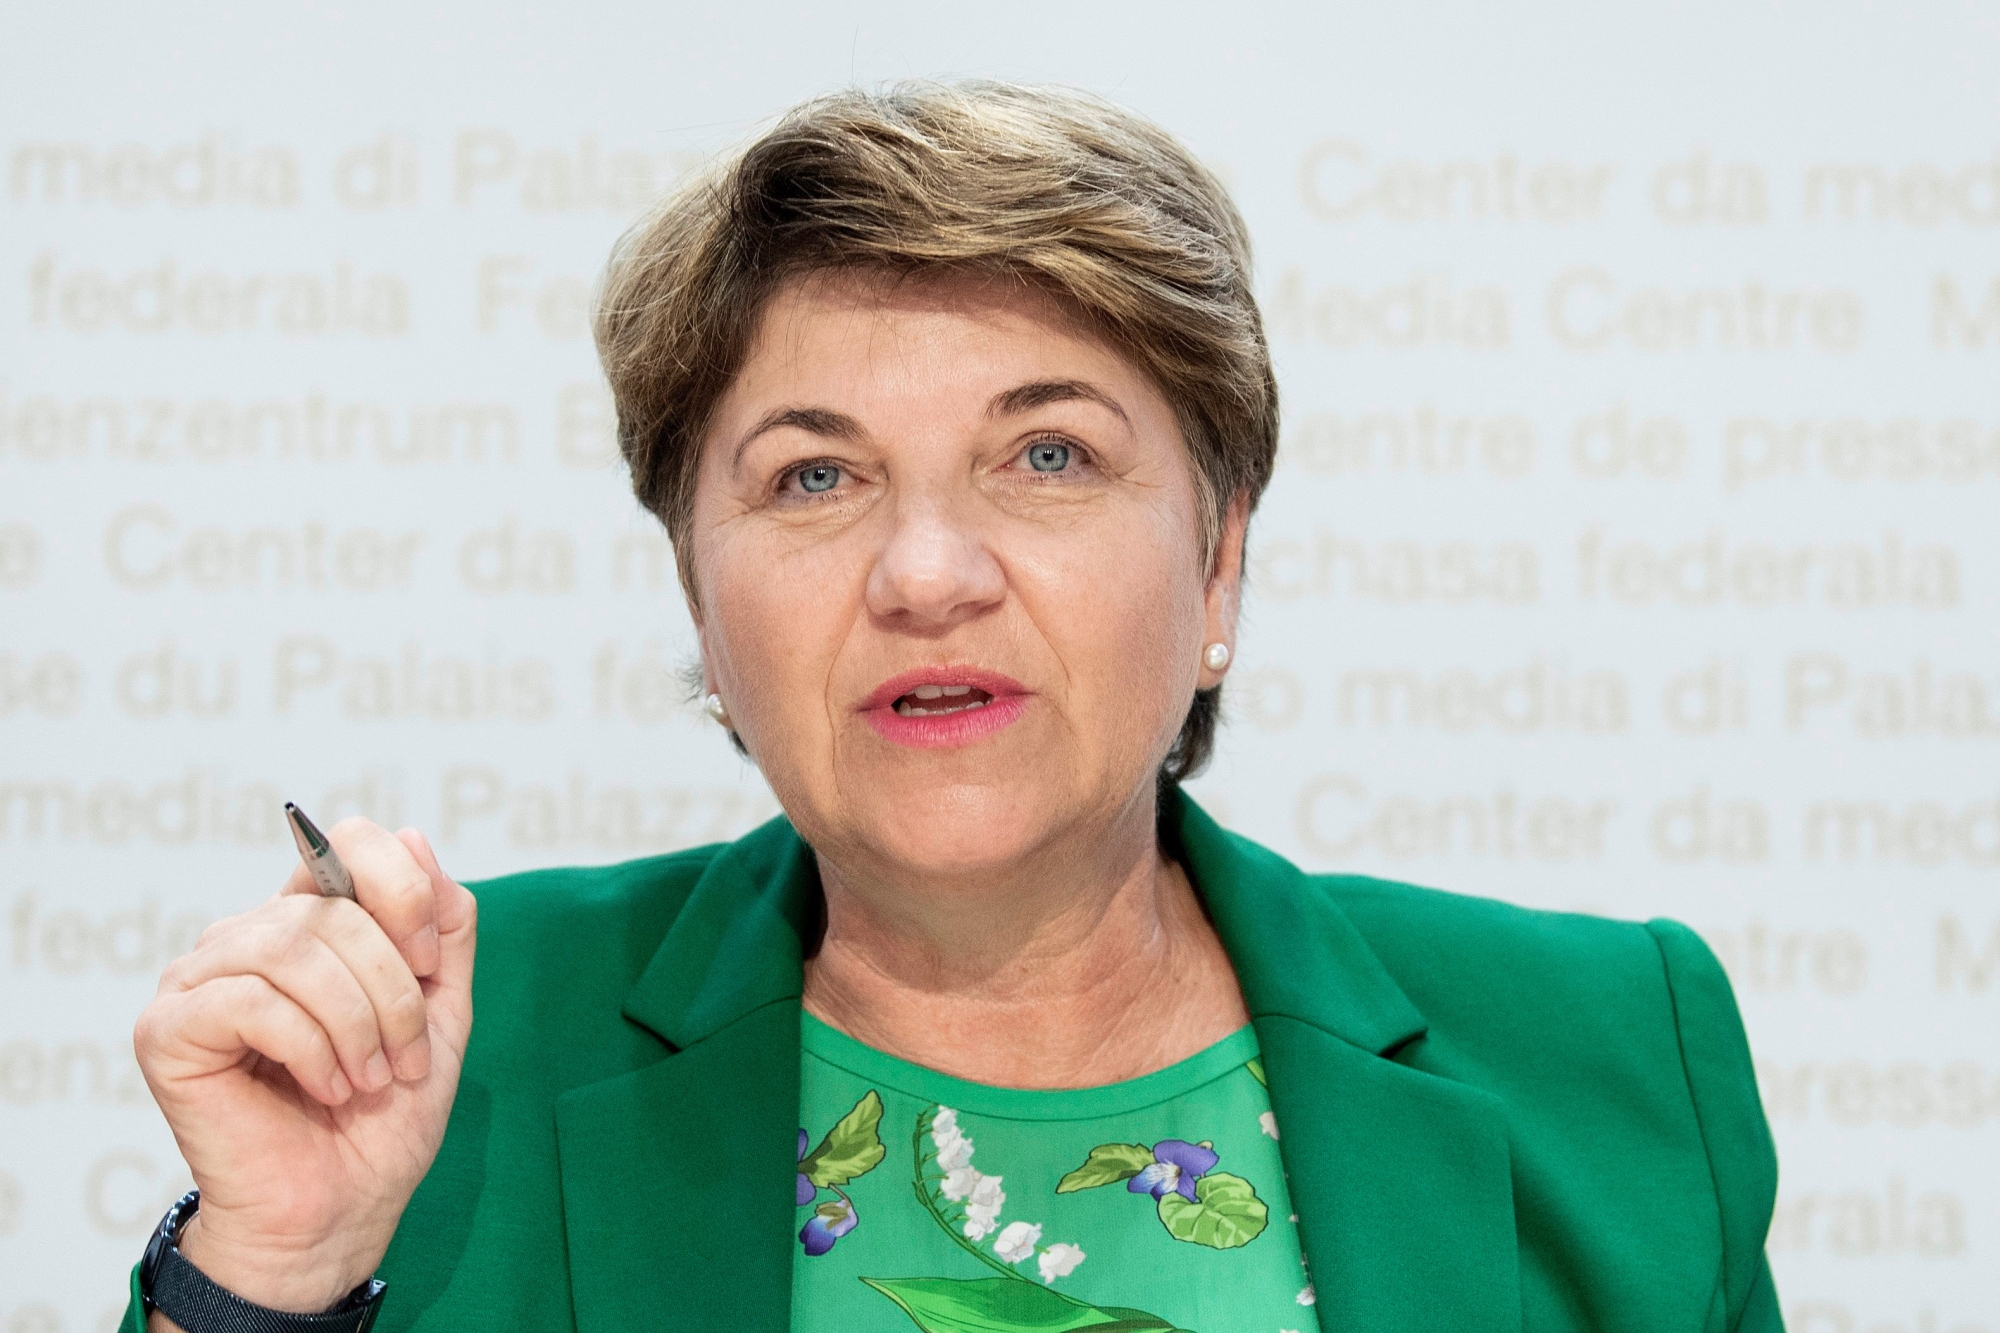 Bundesraetin Viola Amherd spricht an einer Medienkonferenz, am Montag, 17. Juni 2019, in Bern. (KEYSTONE/Peter Schneider) SCHWEIZ MK BUNDESRAT